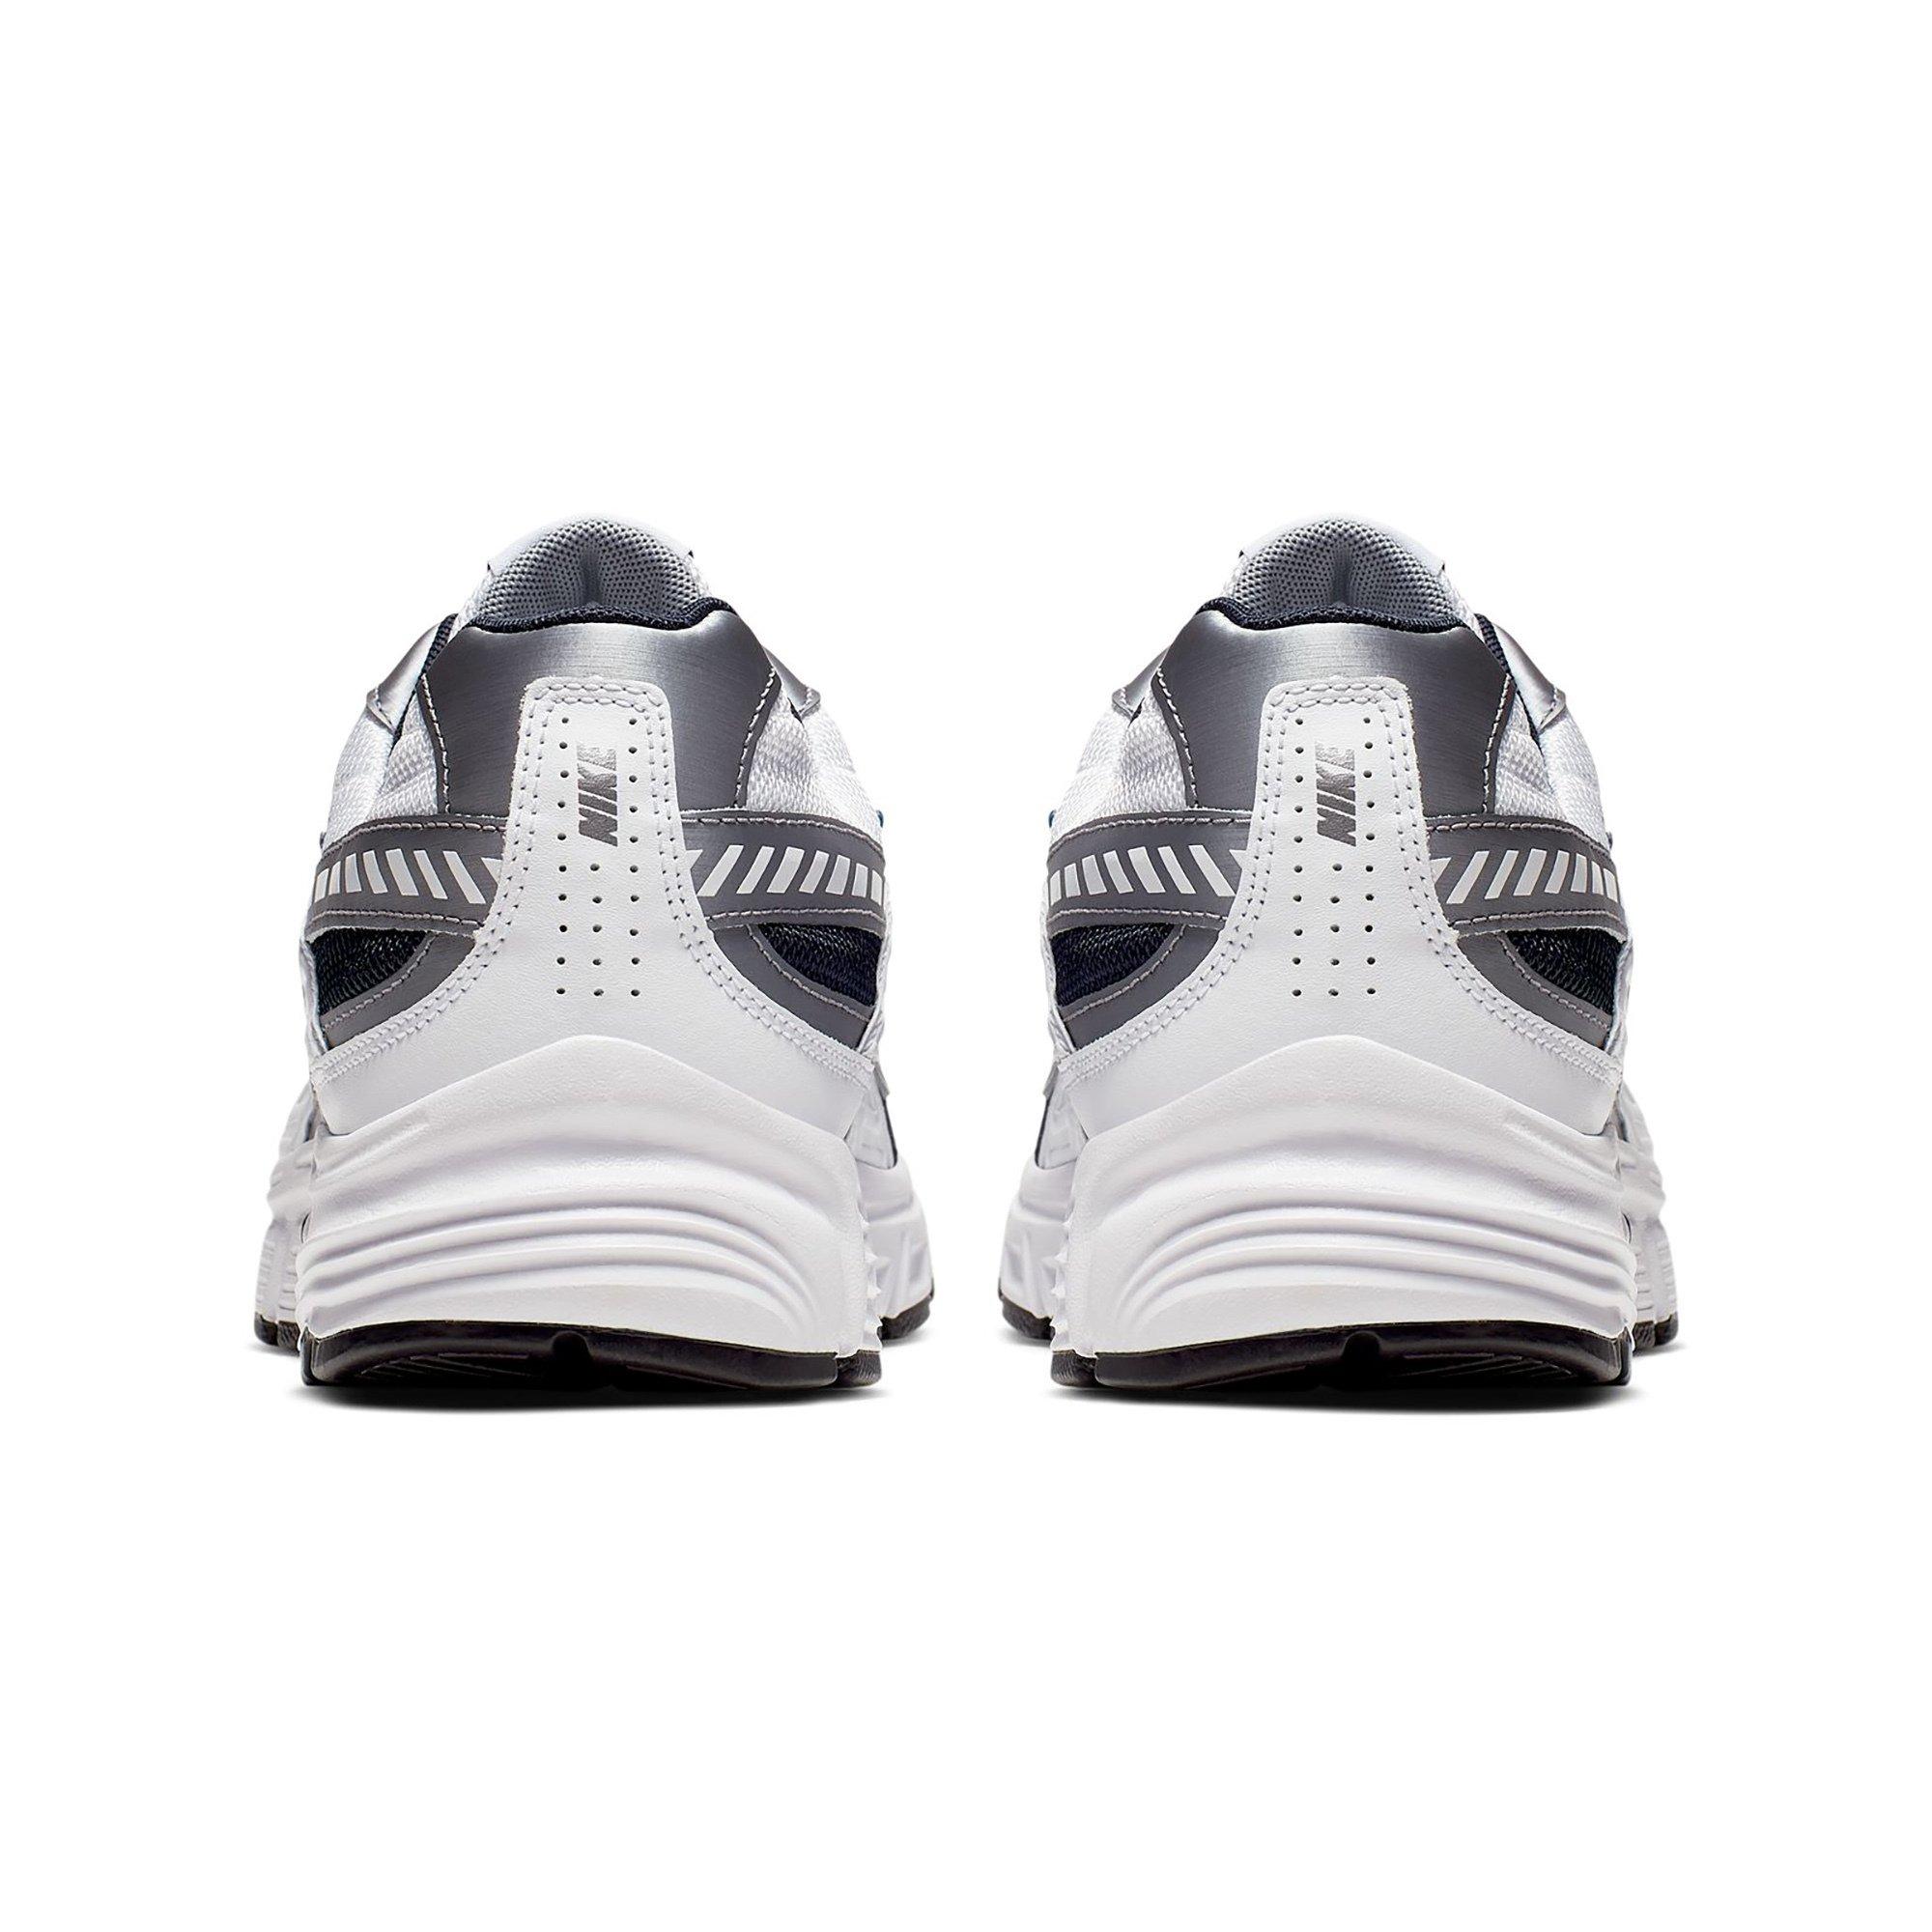 NIKE Men's Nike Initiator Running Shoe Sneakers, bas 